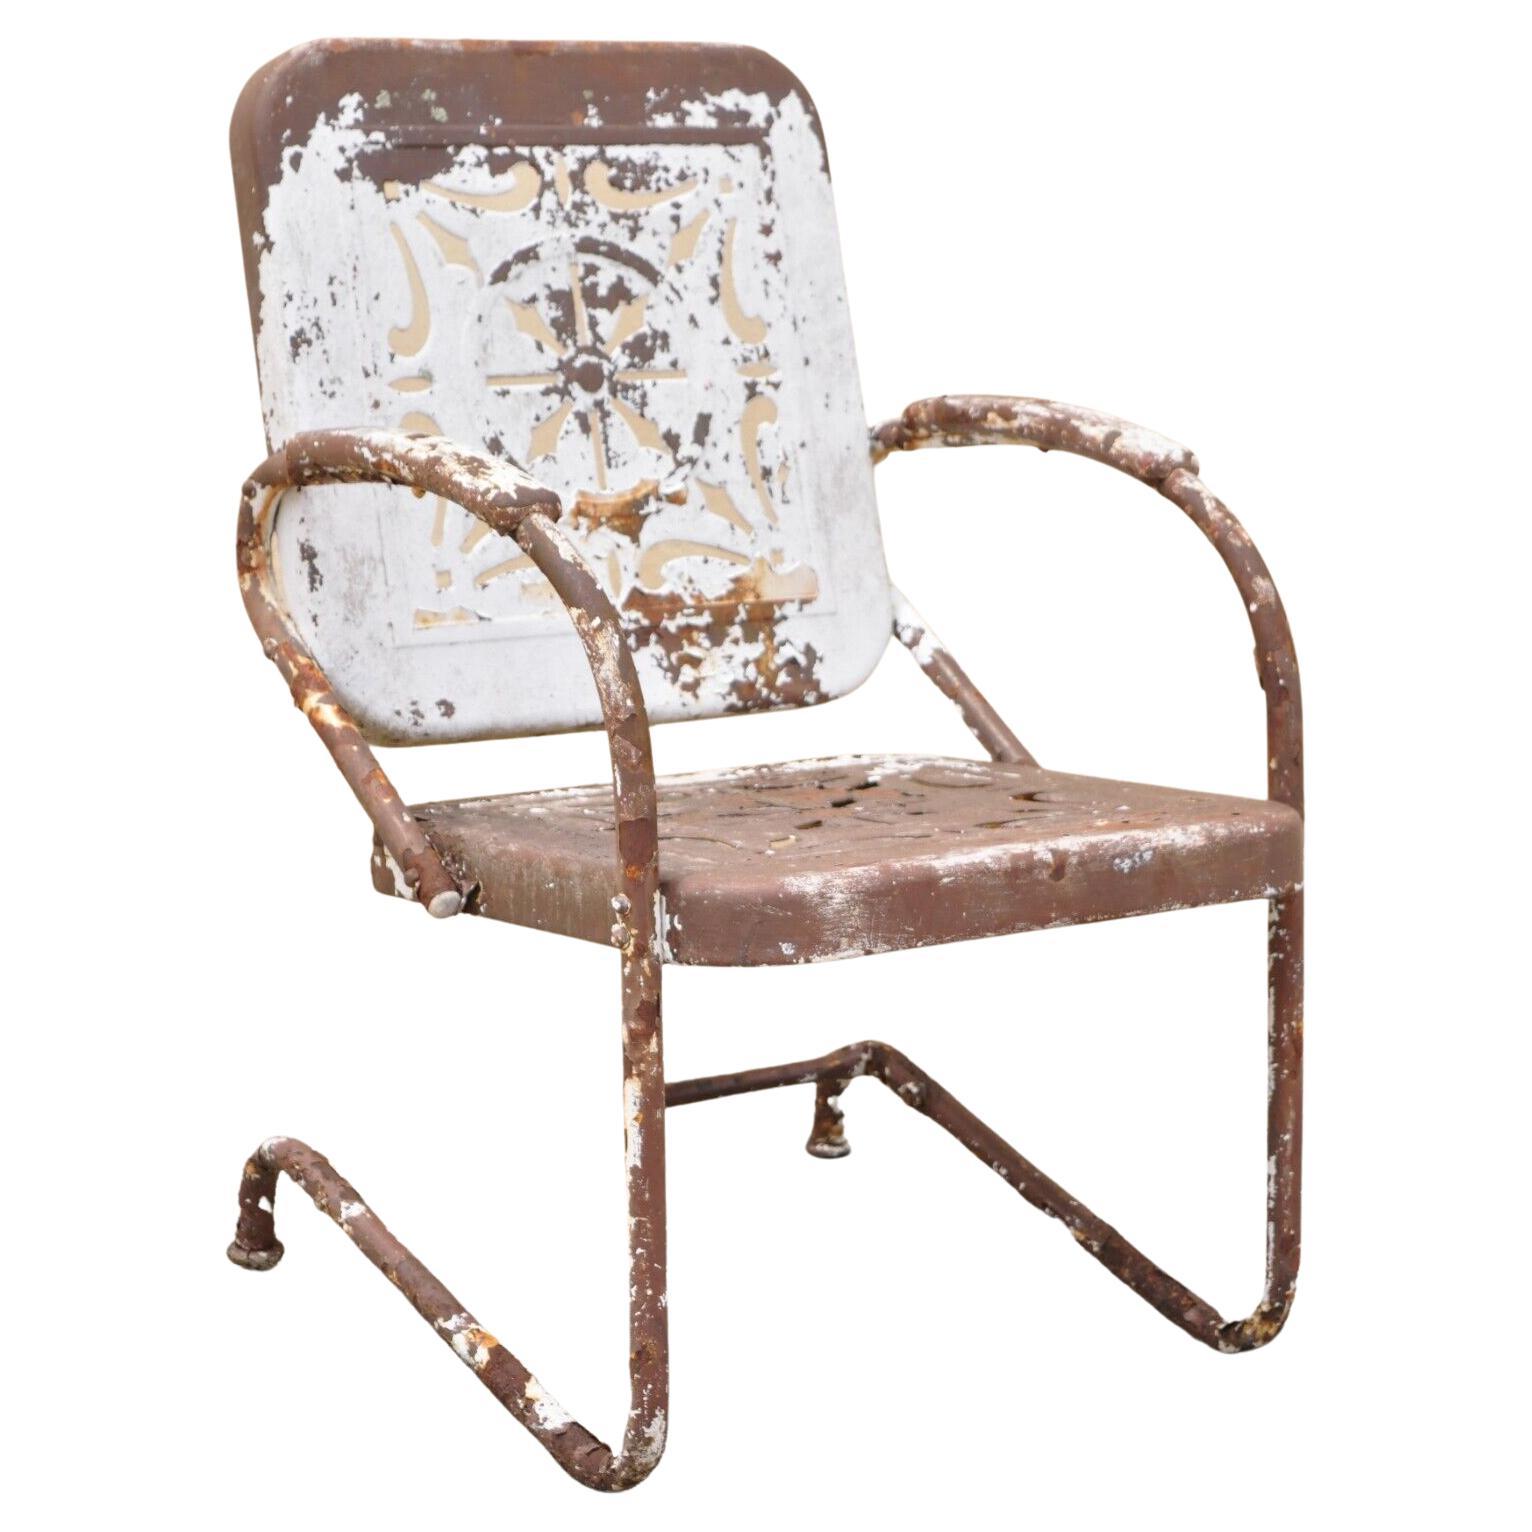 Antique Art Deco Basketweave Brown Distress Paint Bouncer Garden Lounge Chair For Sale